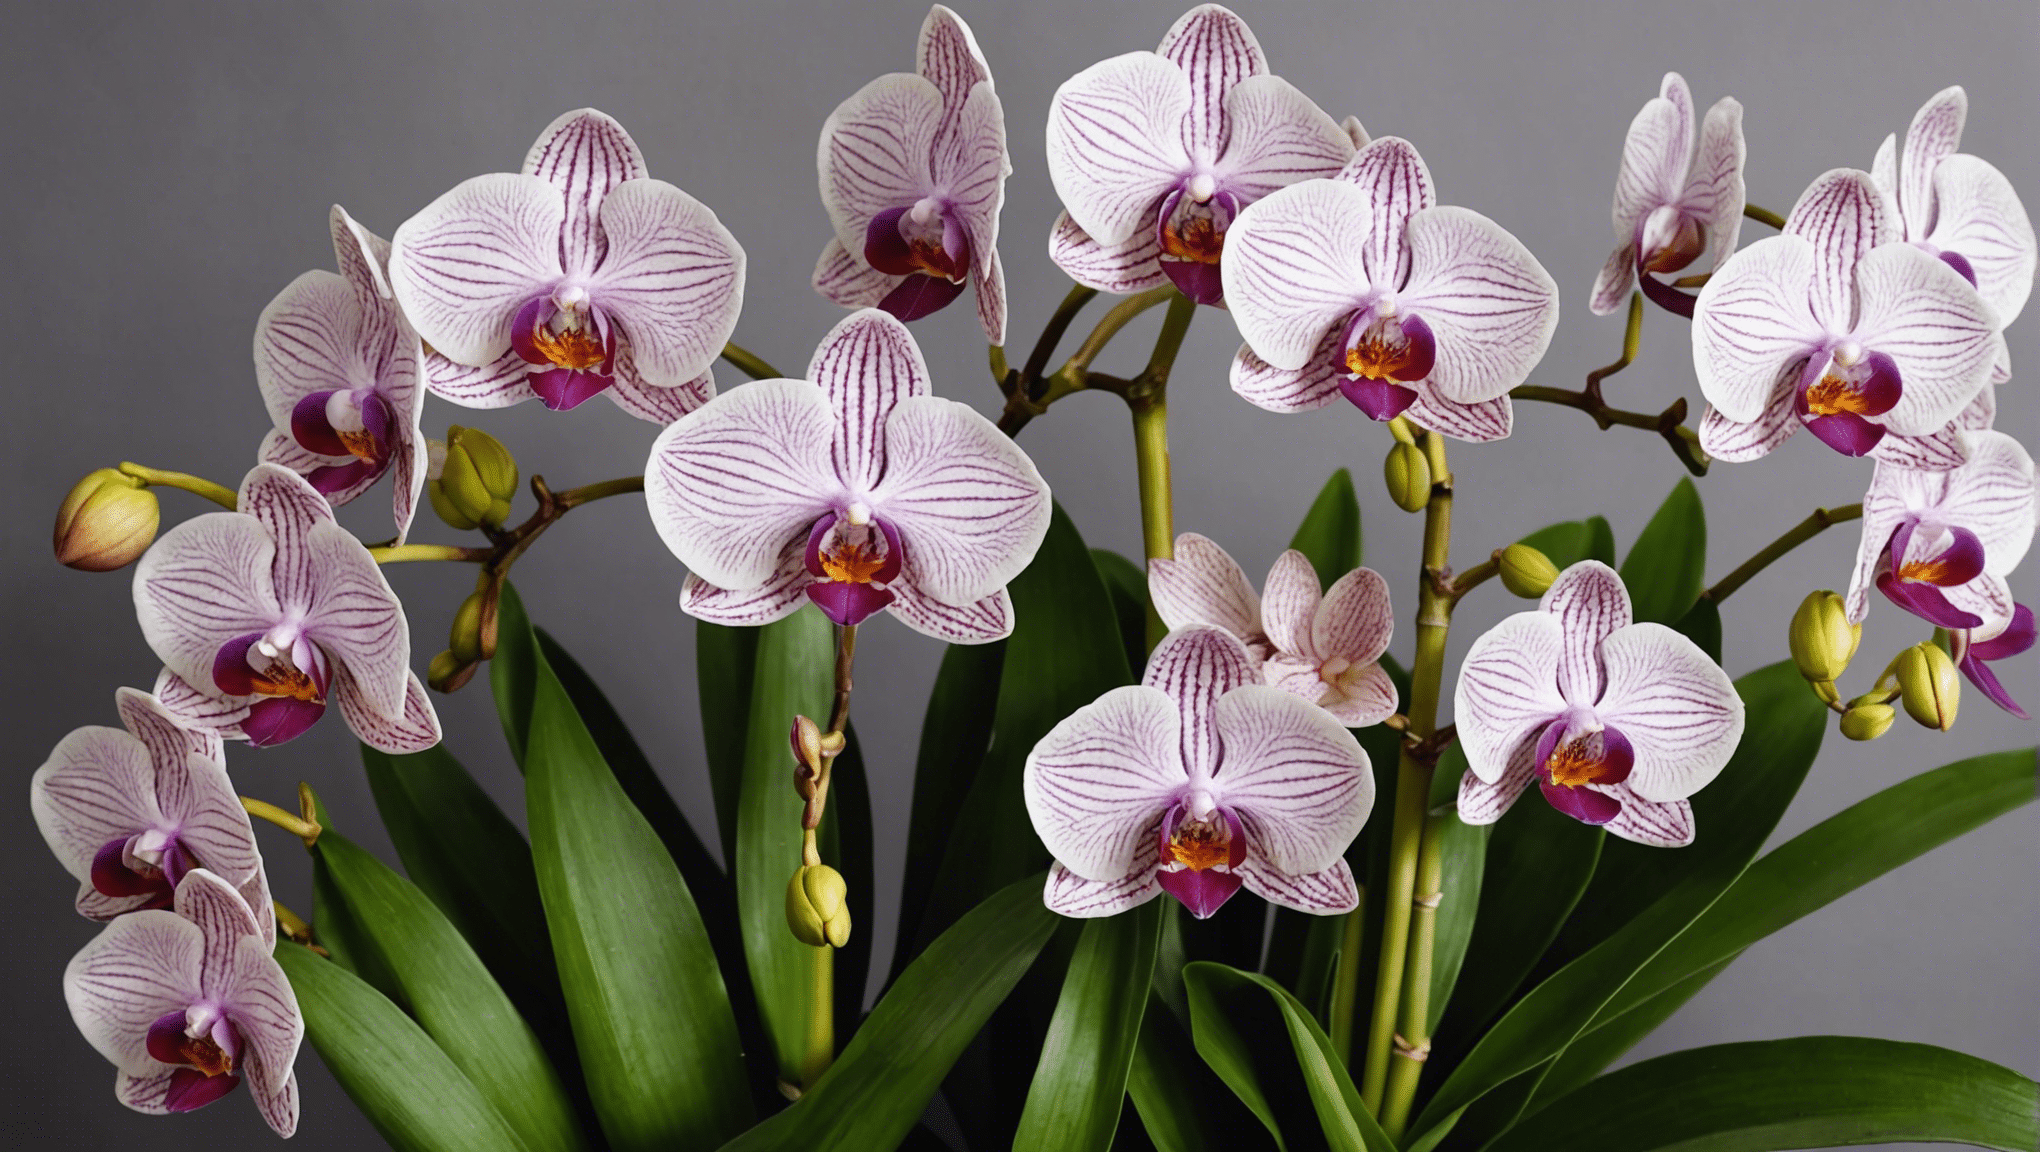 scopri i motivi per cui la tua orchidea si rifiuta di fiorire e impara come evitare gli errori comuni e applicare soluzioni infallibili.